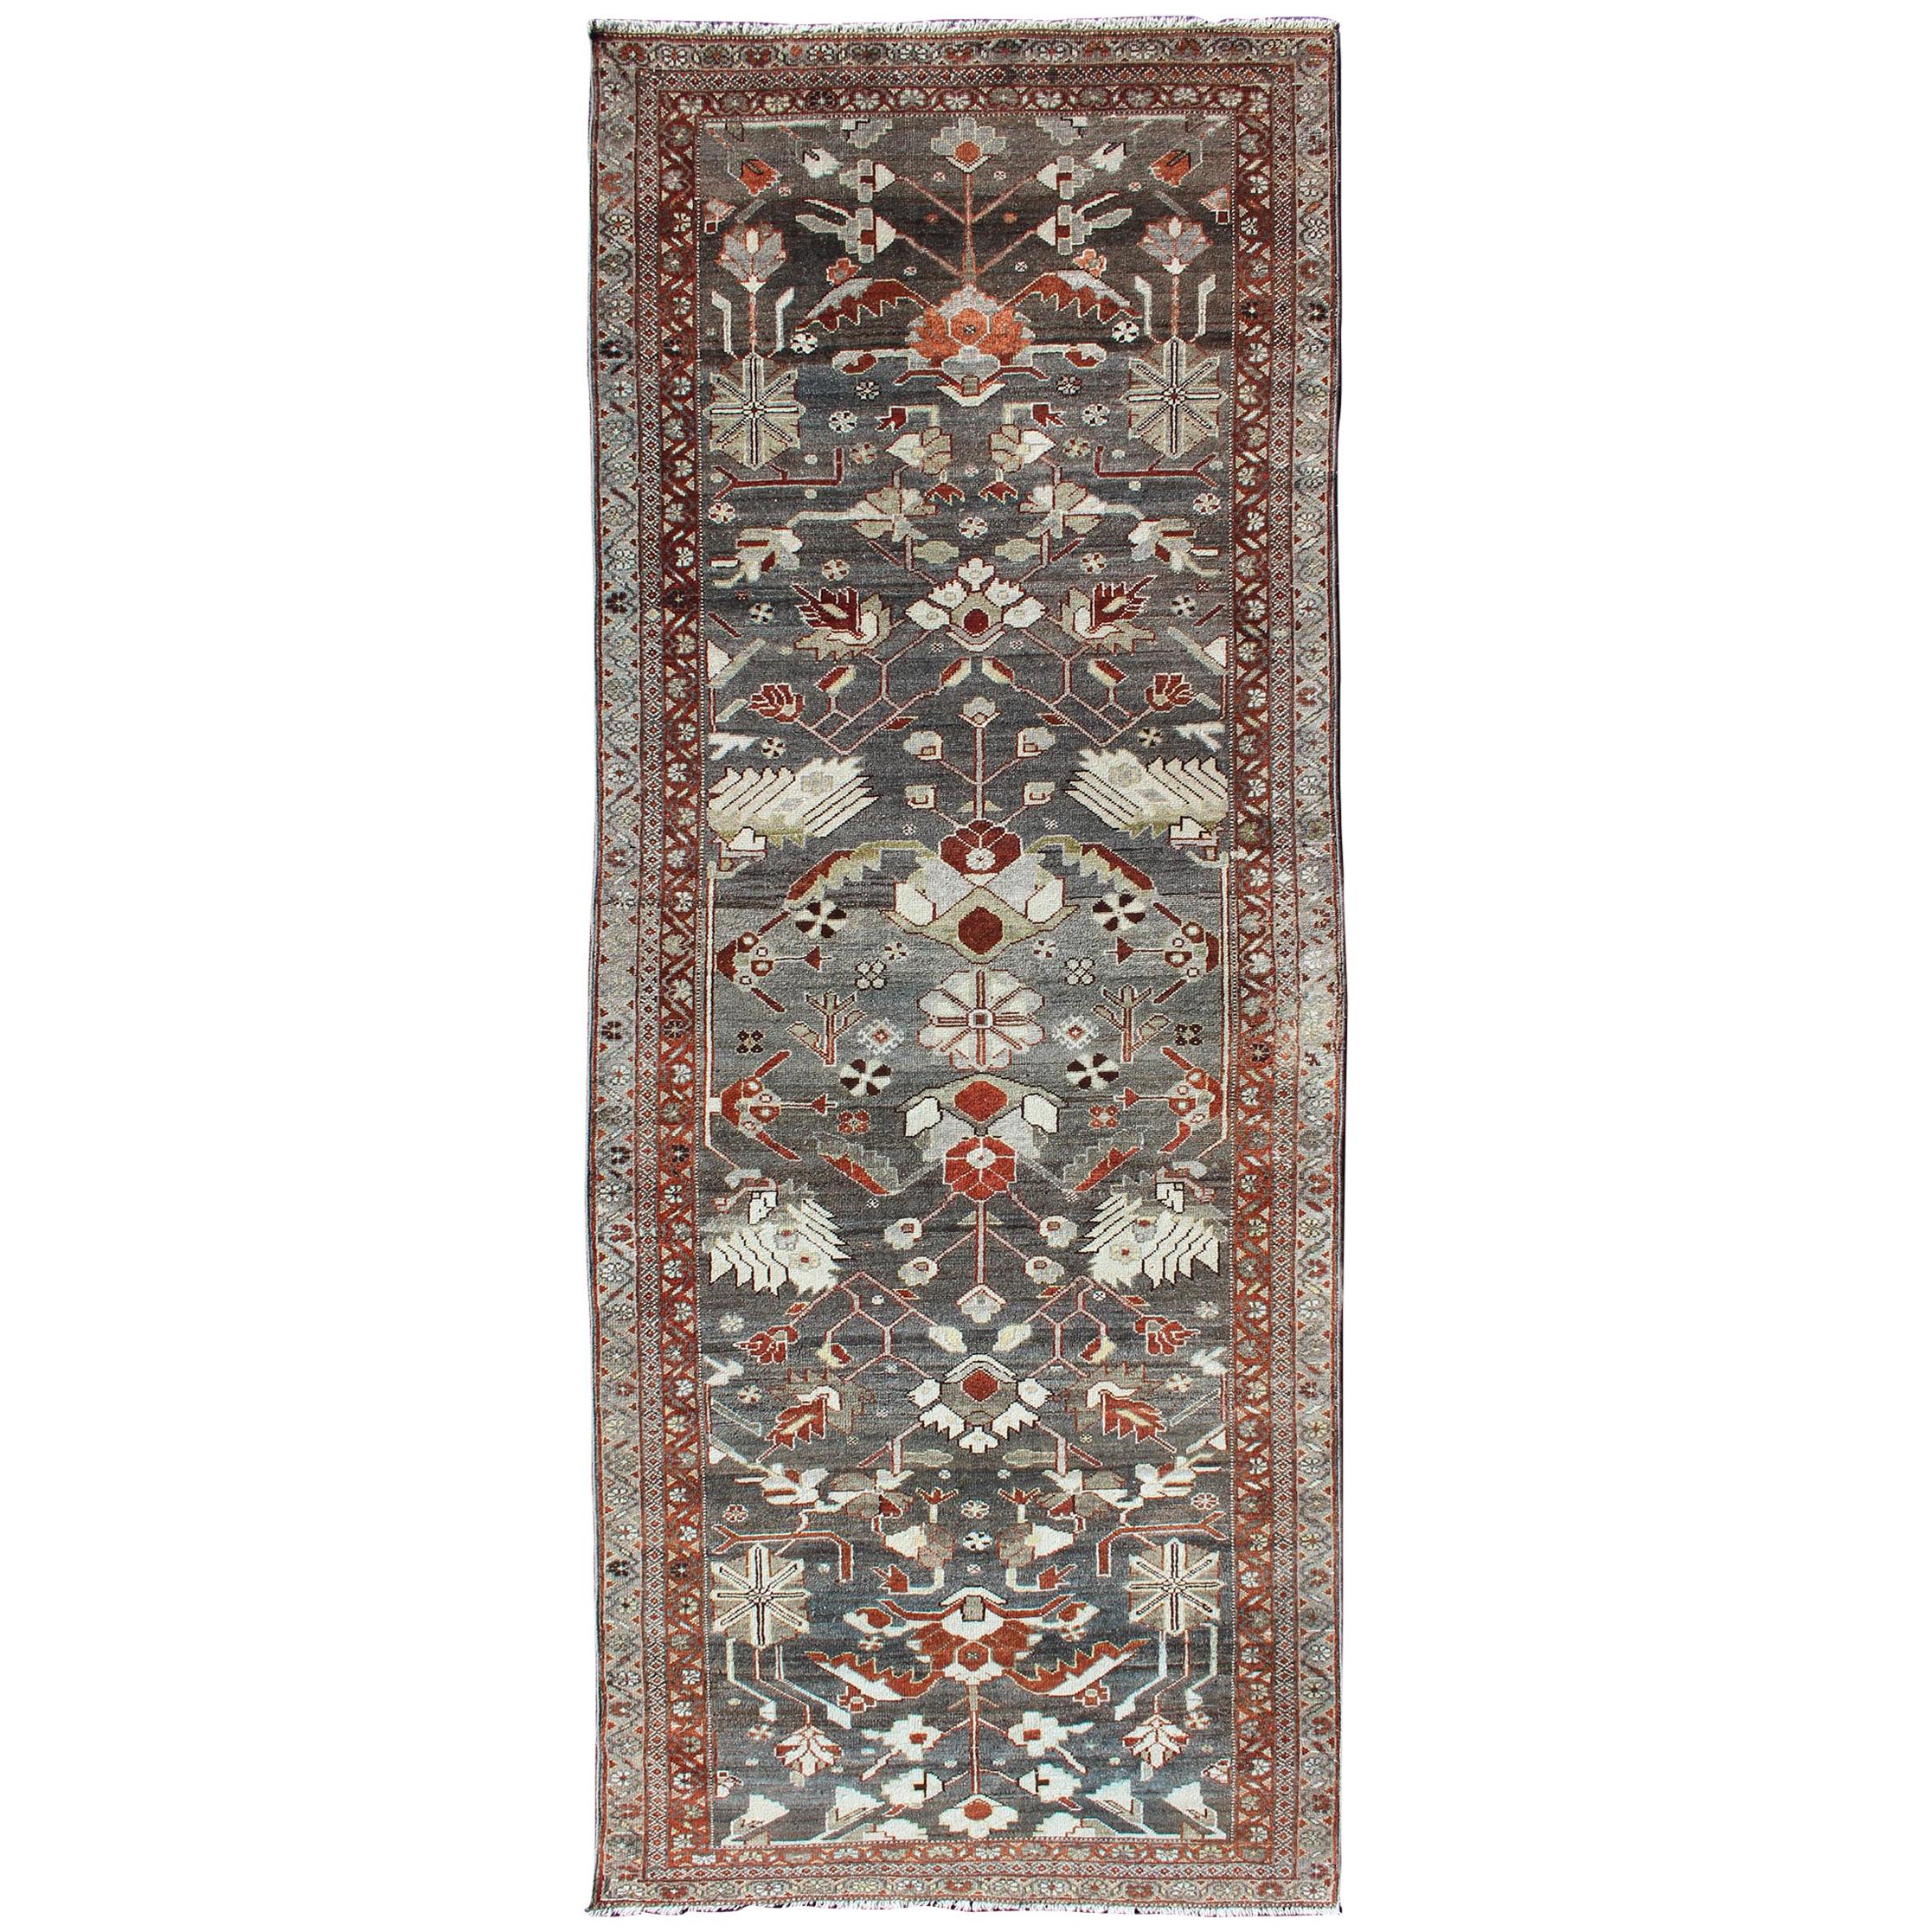 Tapis de couloir persan ancien Hamedan rouge et antique au fusain avec motifs floraux sur toute sa surface